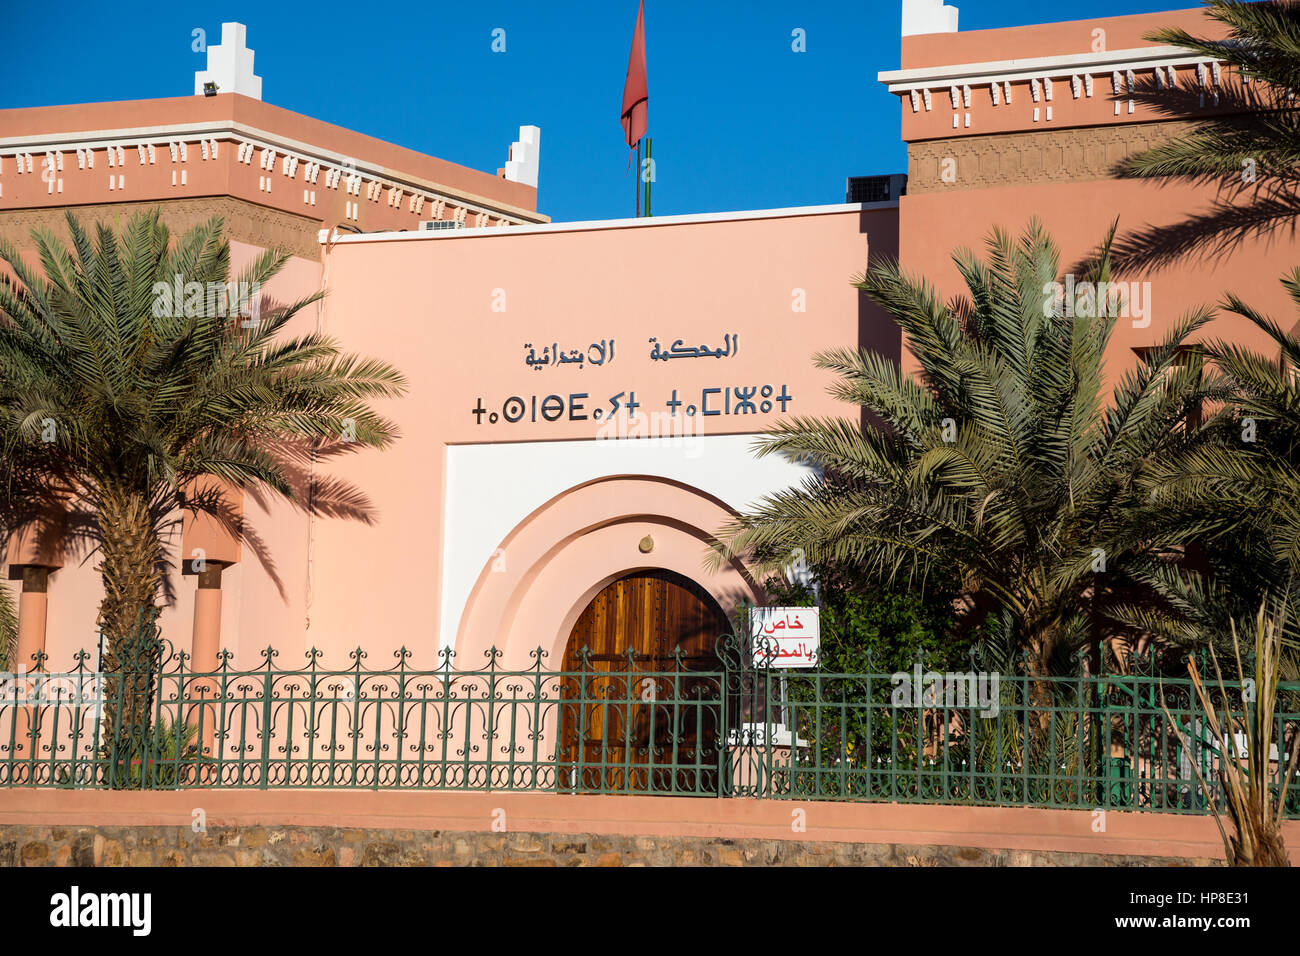 Zagora, Marocco. Tifinagh (berbères) e scrittura araba oltre l'ingresso alla corte. Foto Stock